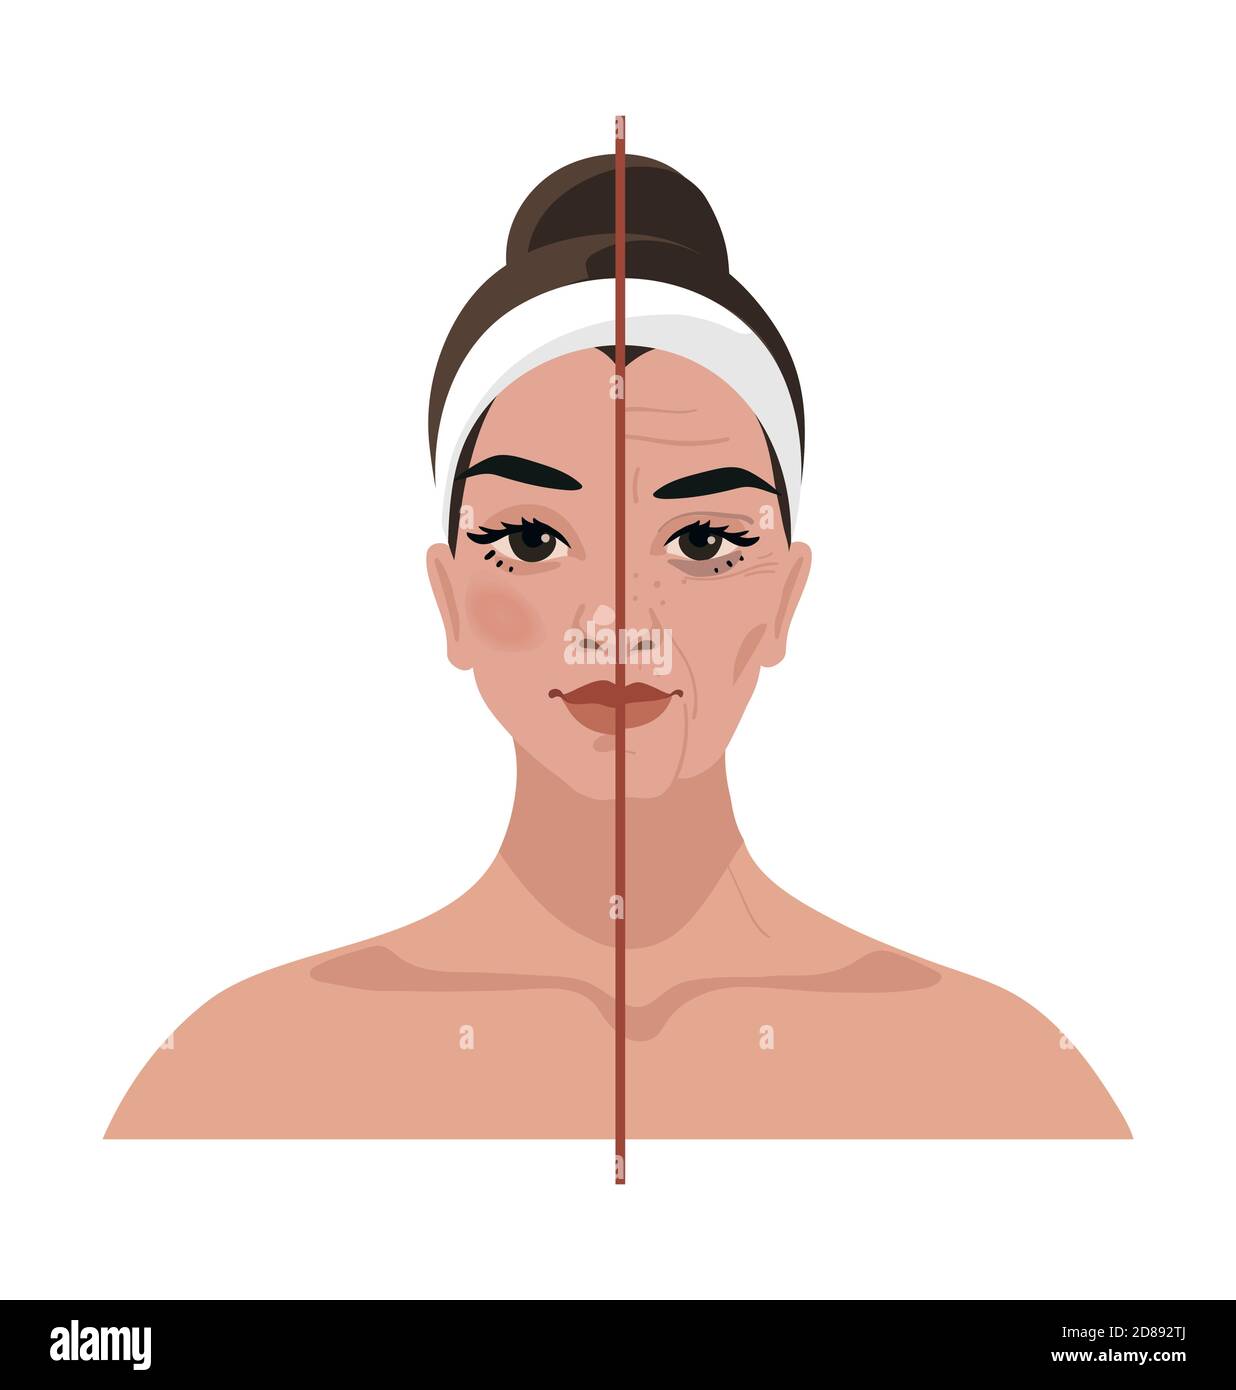 Porträt einer jungen Frau und altersbedingte Veränderungen im Gesicht. Vor und nach kosmetischen Verfahren, Injektionen, plastische Chirurgie. Flache Vektorgrafik Stock Vektor